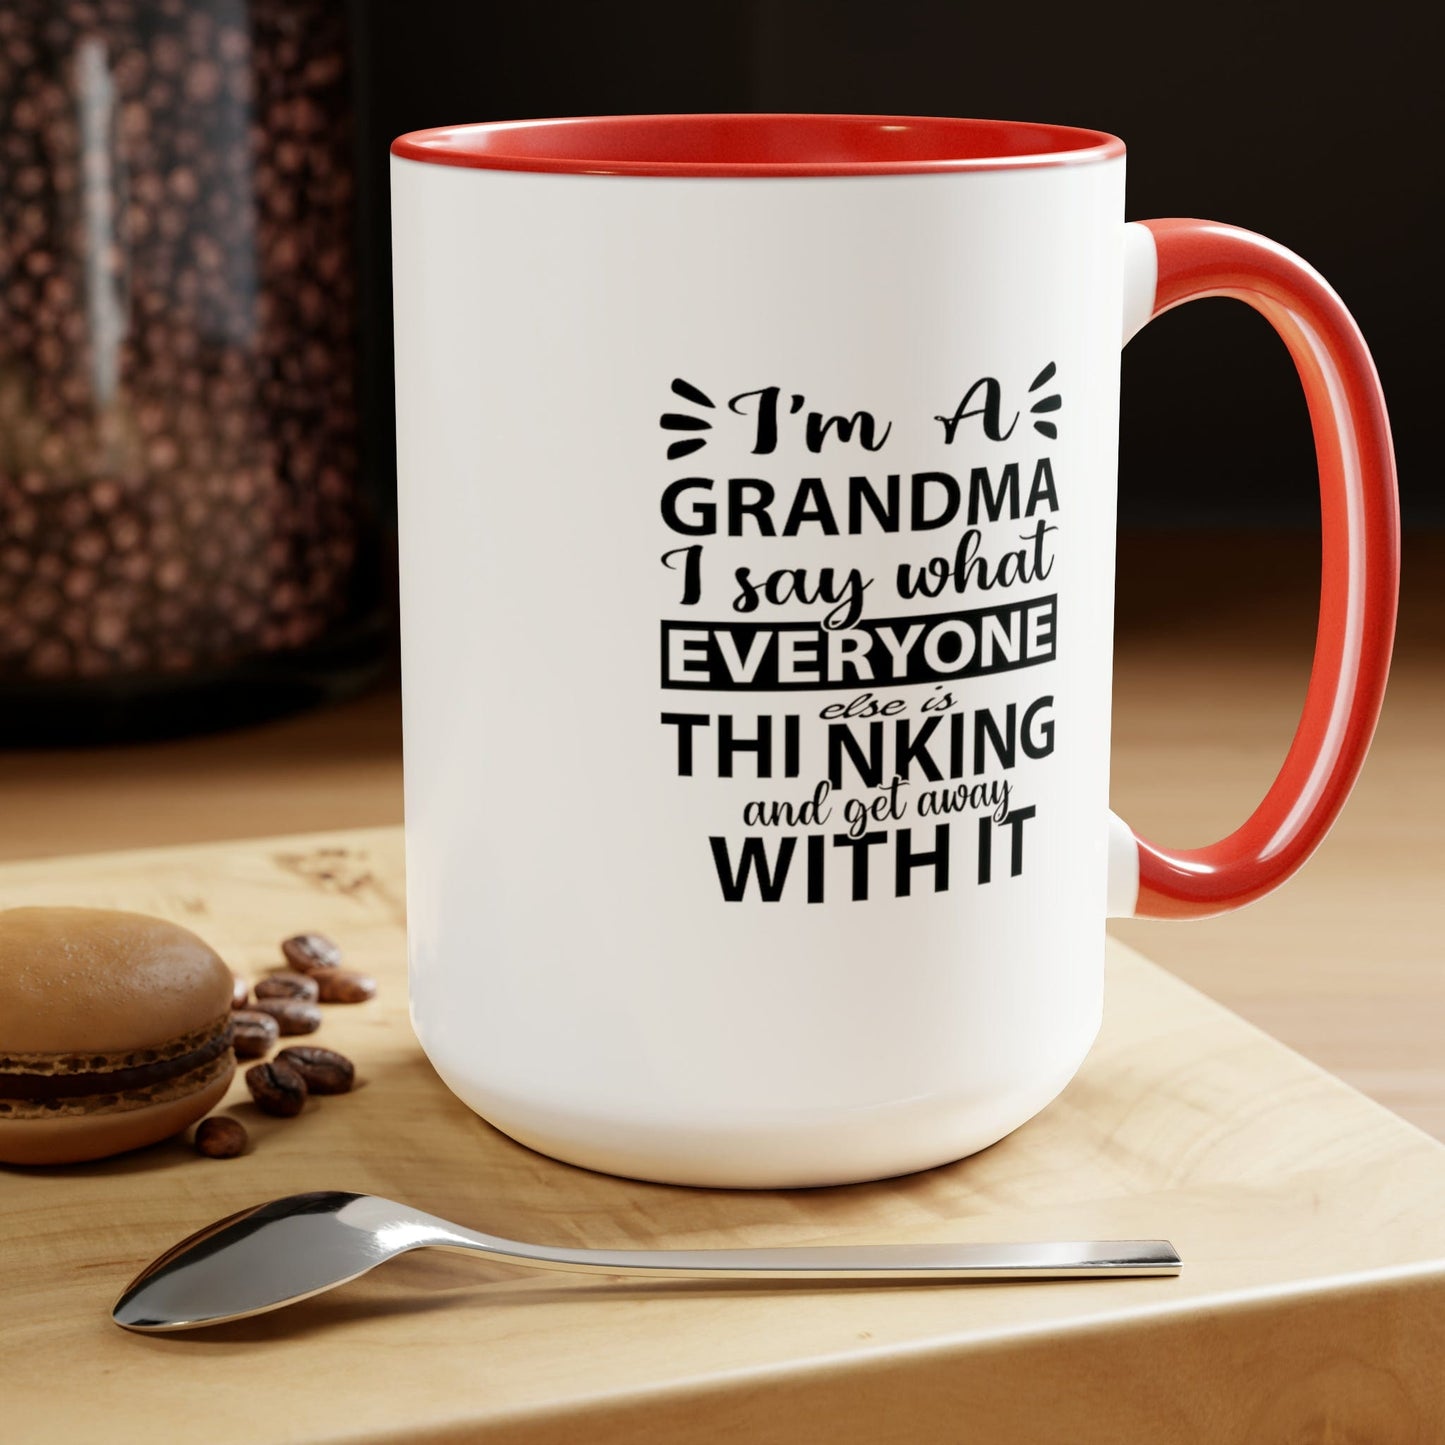 I'm A Grandma Two-Tone Coffee Mugs, 15oz